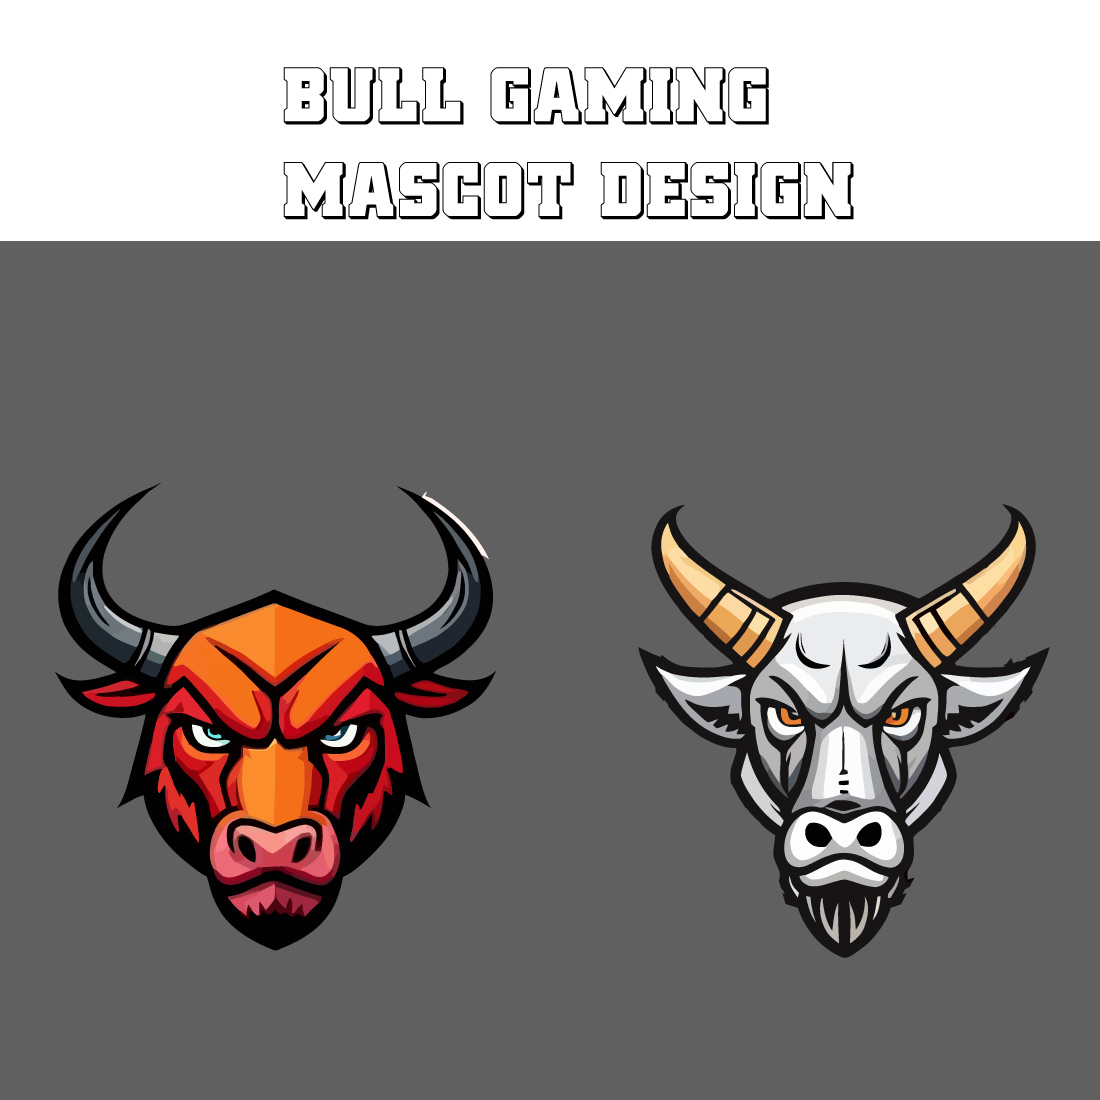 2 bull gaming mascot logos cover image.